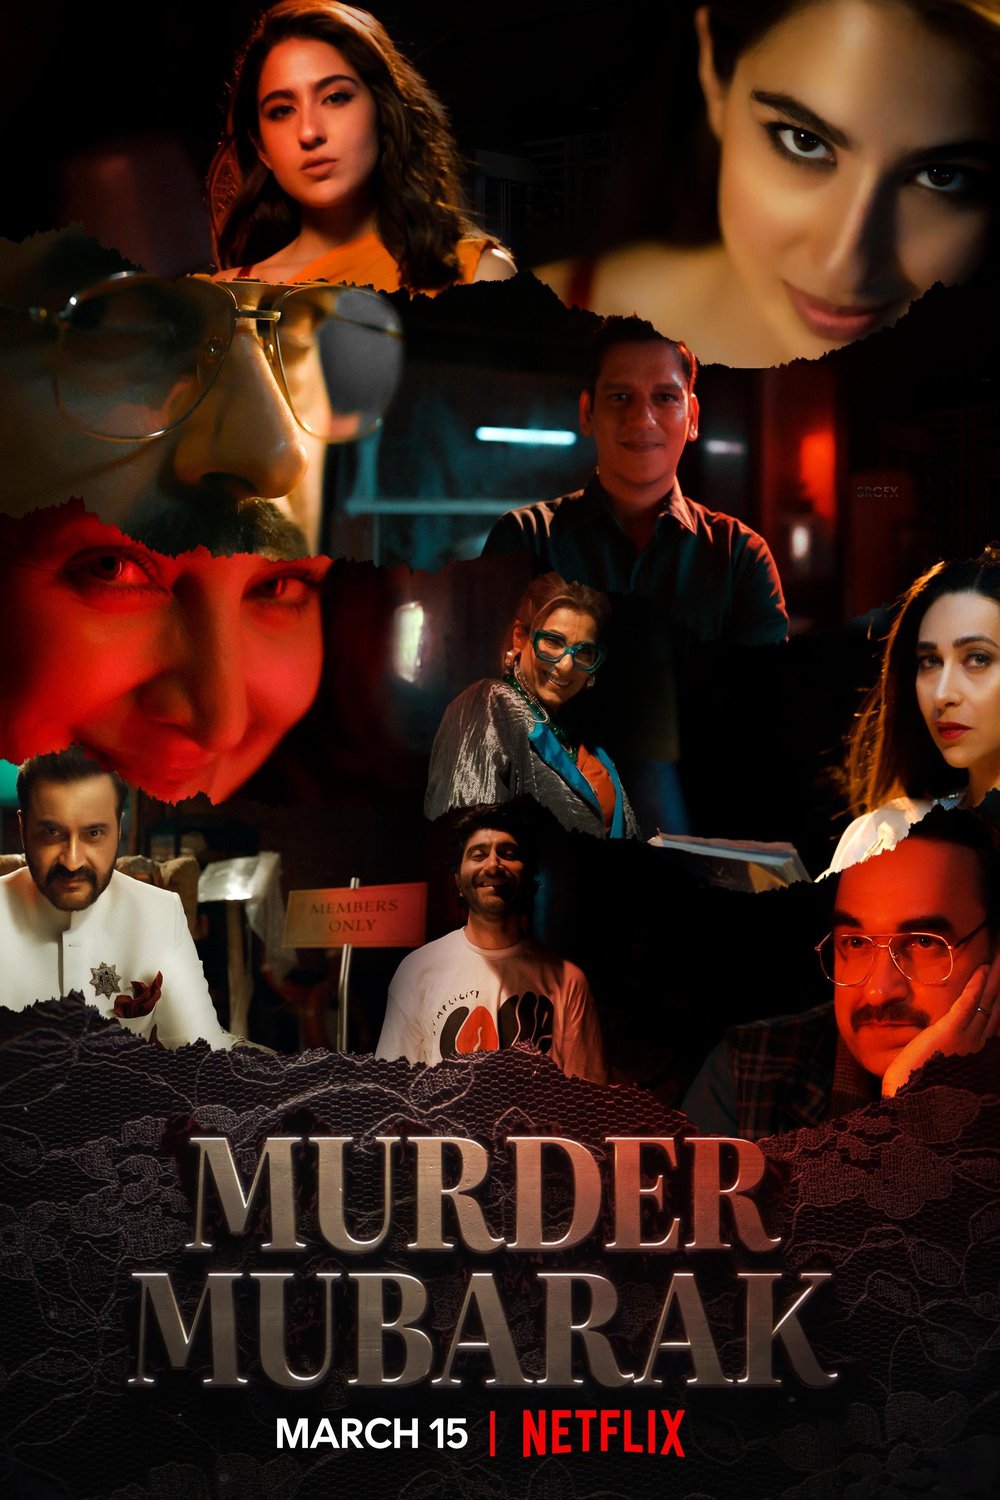 Hindi poster of the movie Murder Mubarak